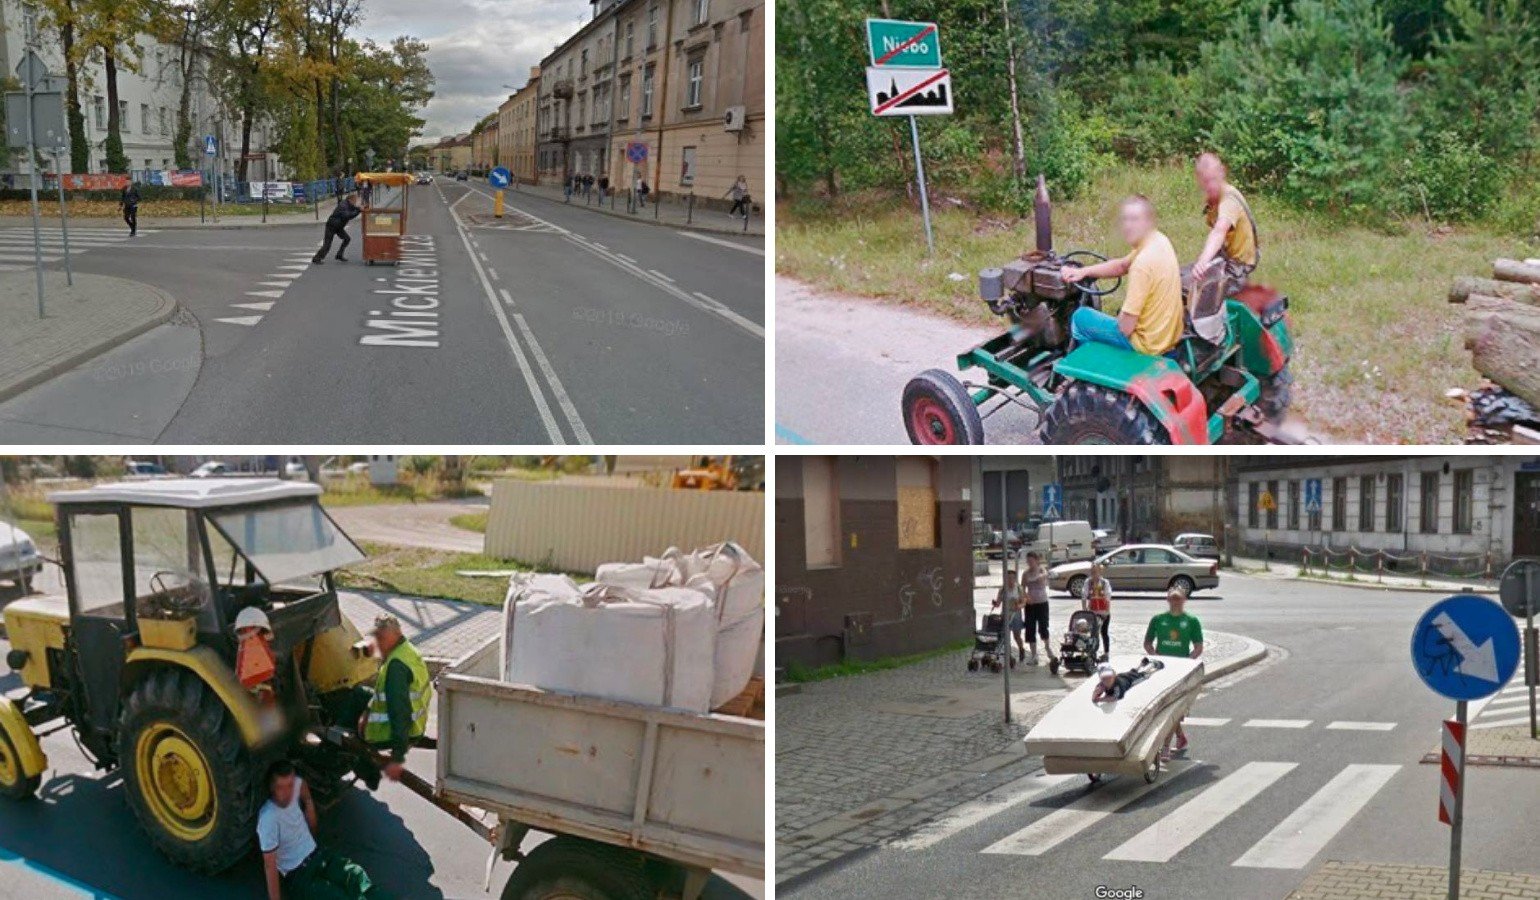 Smieszne Miejsca Na Google Maps Polska w Google Street View. Zobacz śmieszne sytuacje z kamer aut Google [ZDJĘCIA] | Gazeta